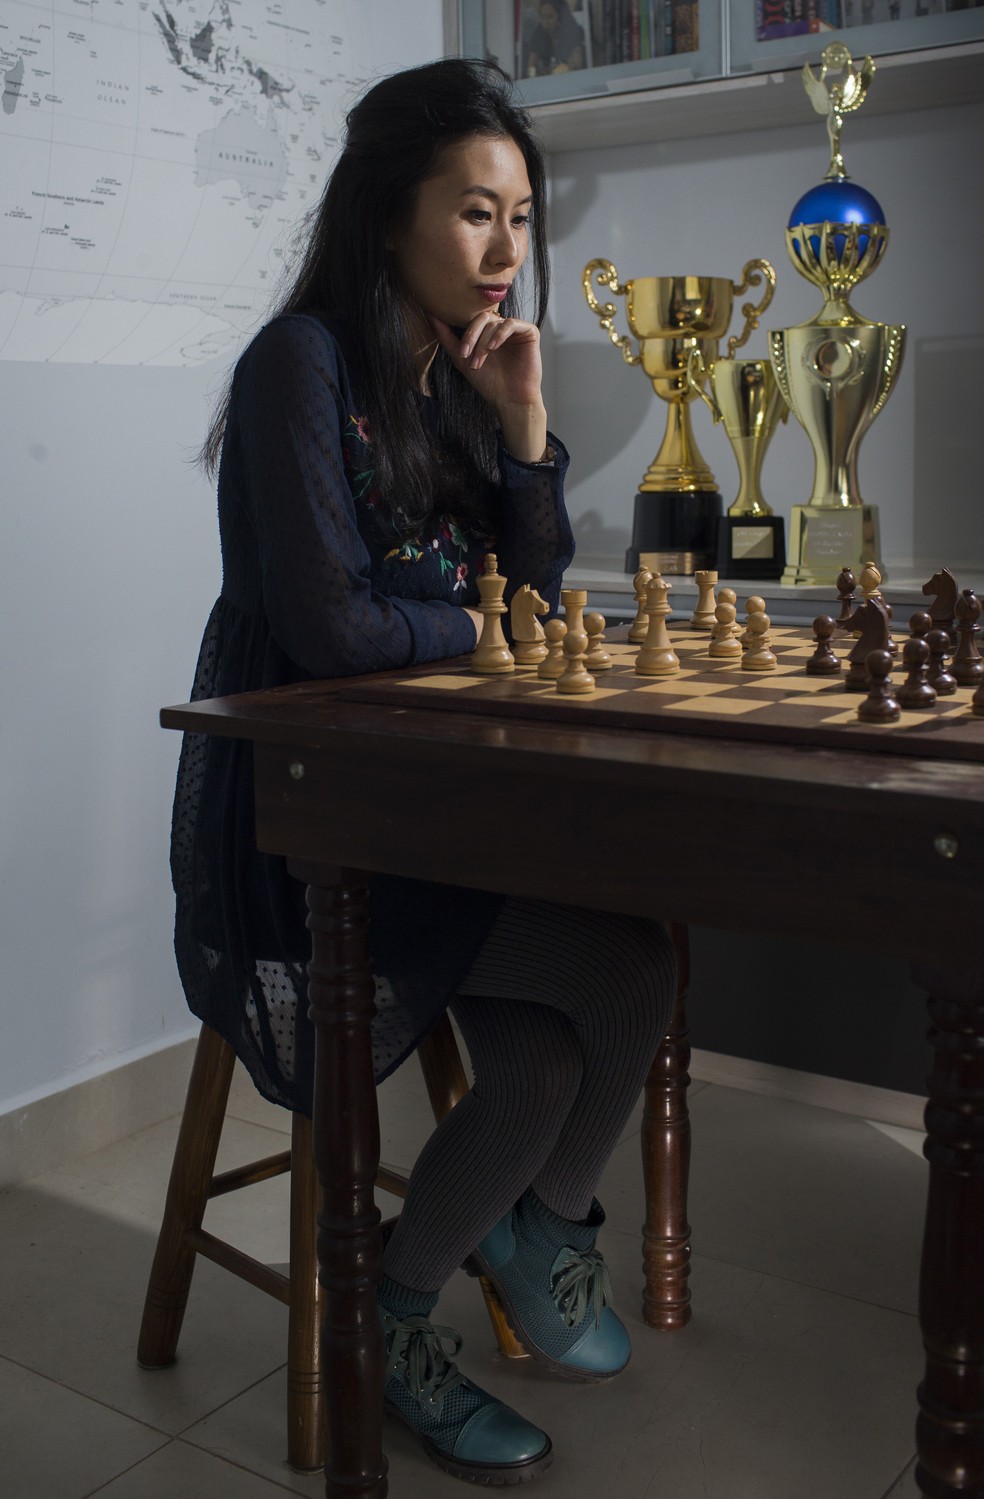 A série 'O Gambito da Rainha' põe o xadrez em evidência